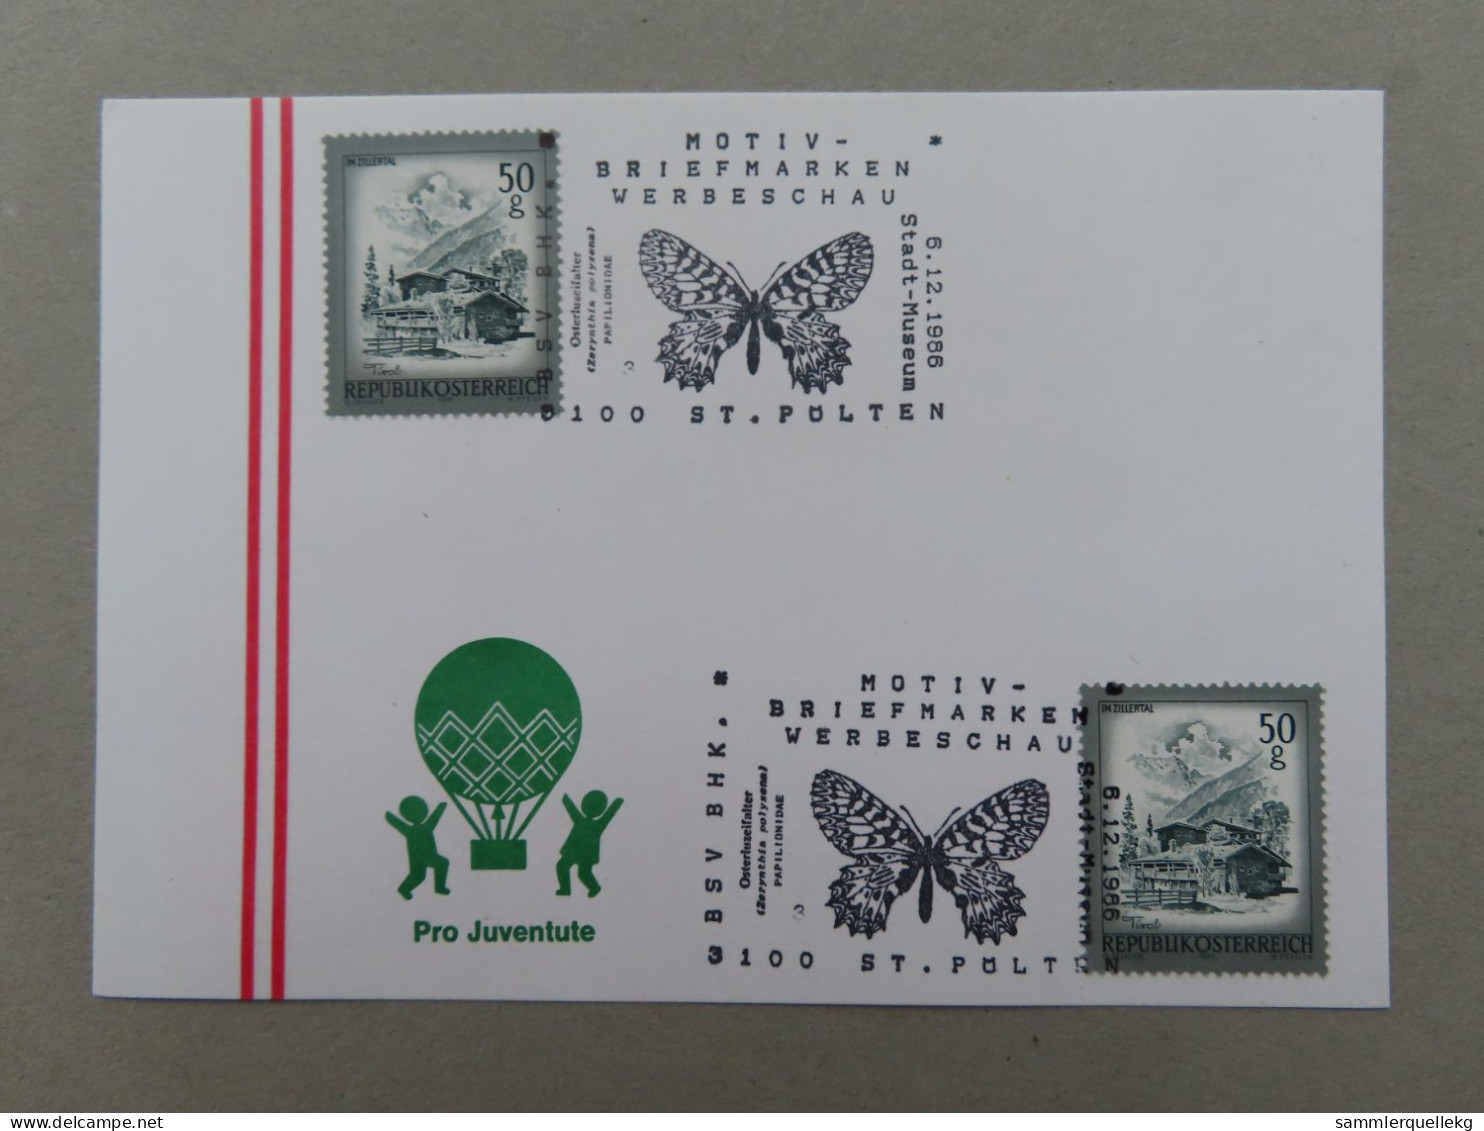 Österreich Pro Juventute - Mit Sonderstempel 6. 12. 1986 St. Pölten, Motiv - Briefmarken Werbeschau (Nr.1053) - Other & Unclassified